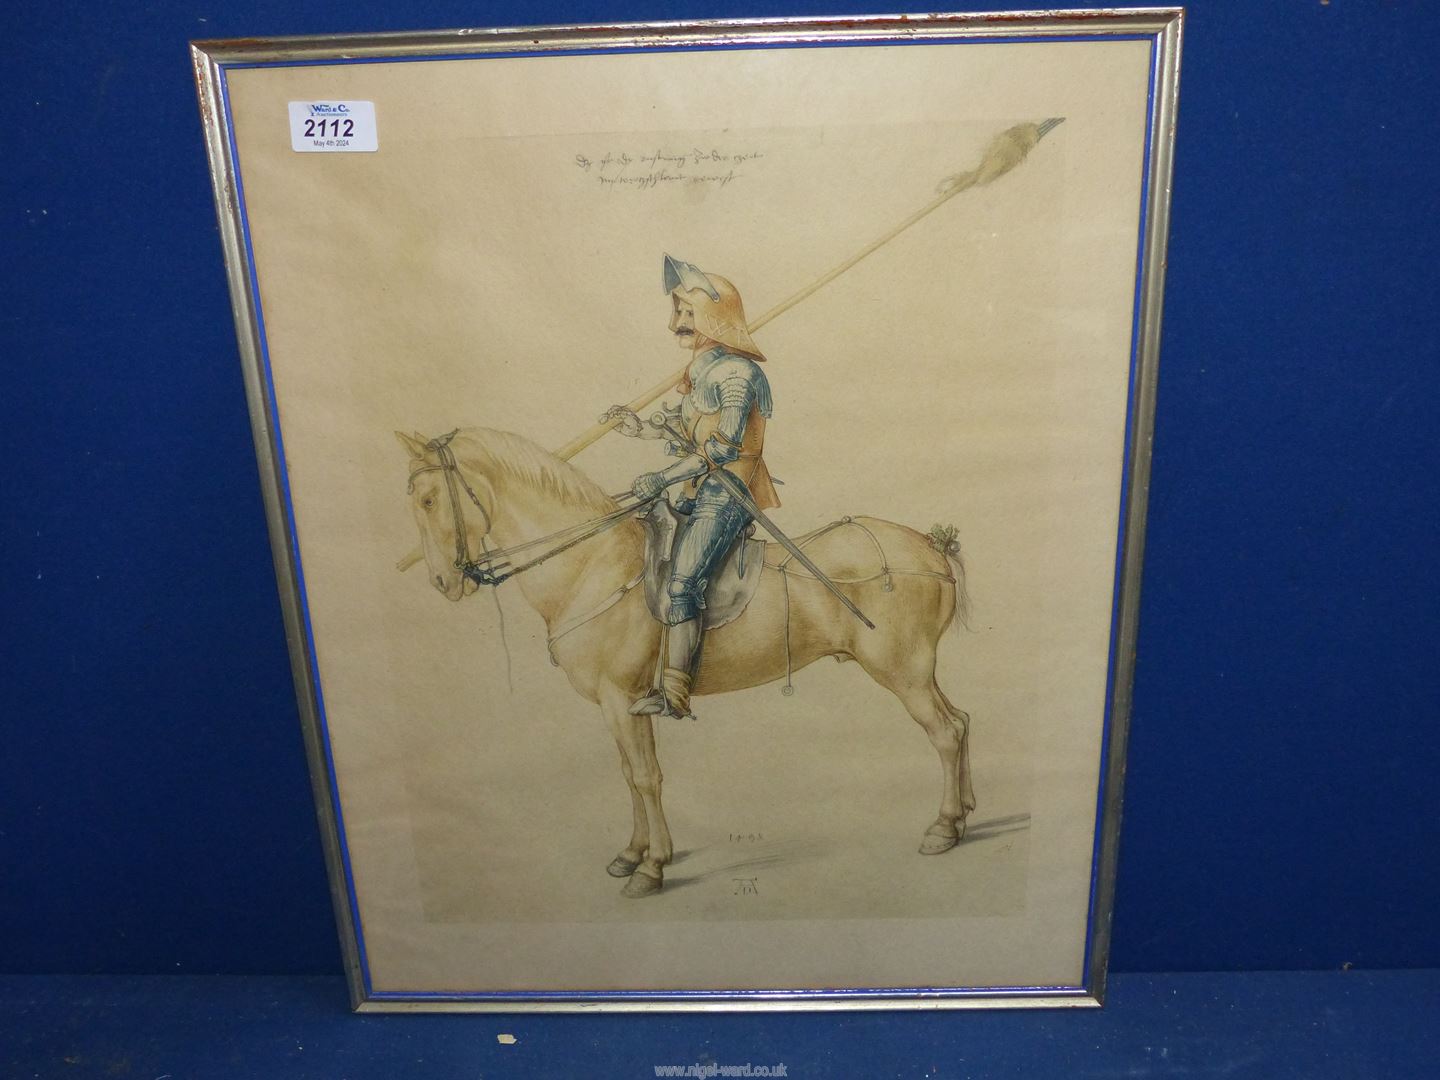 A framed coloured Print of an engraving of Soldier on horseback, after Albrecht Durer,